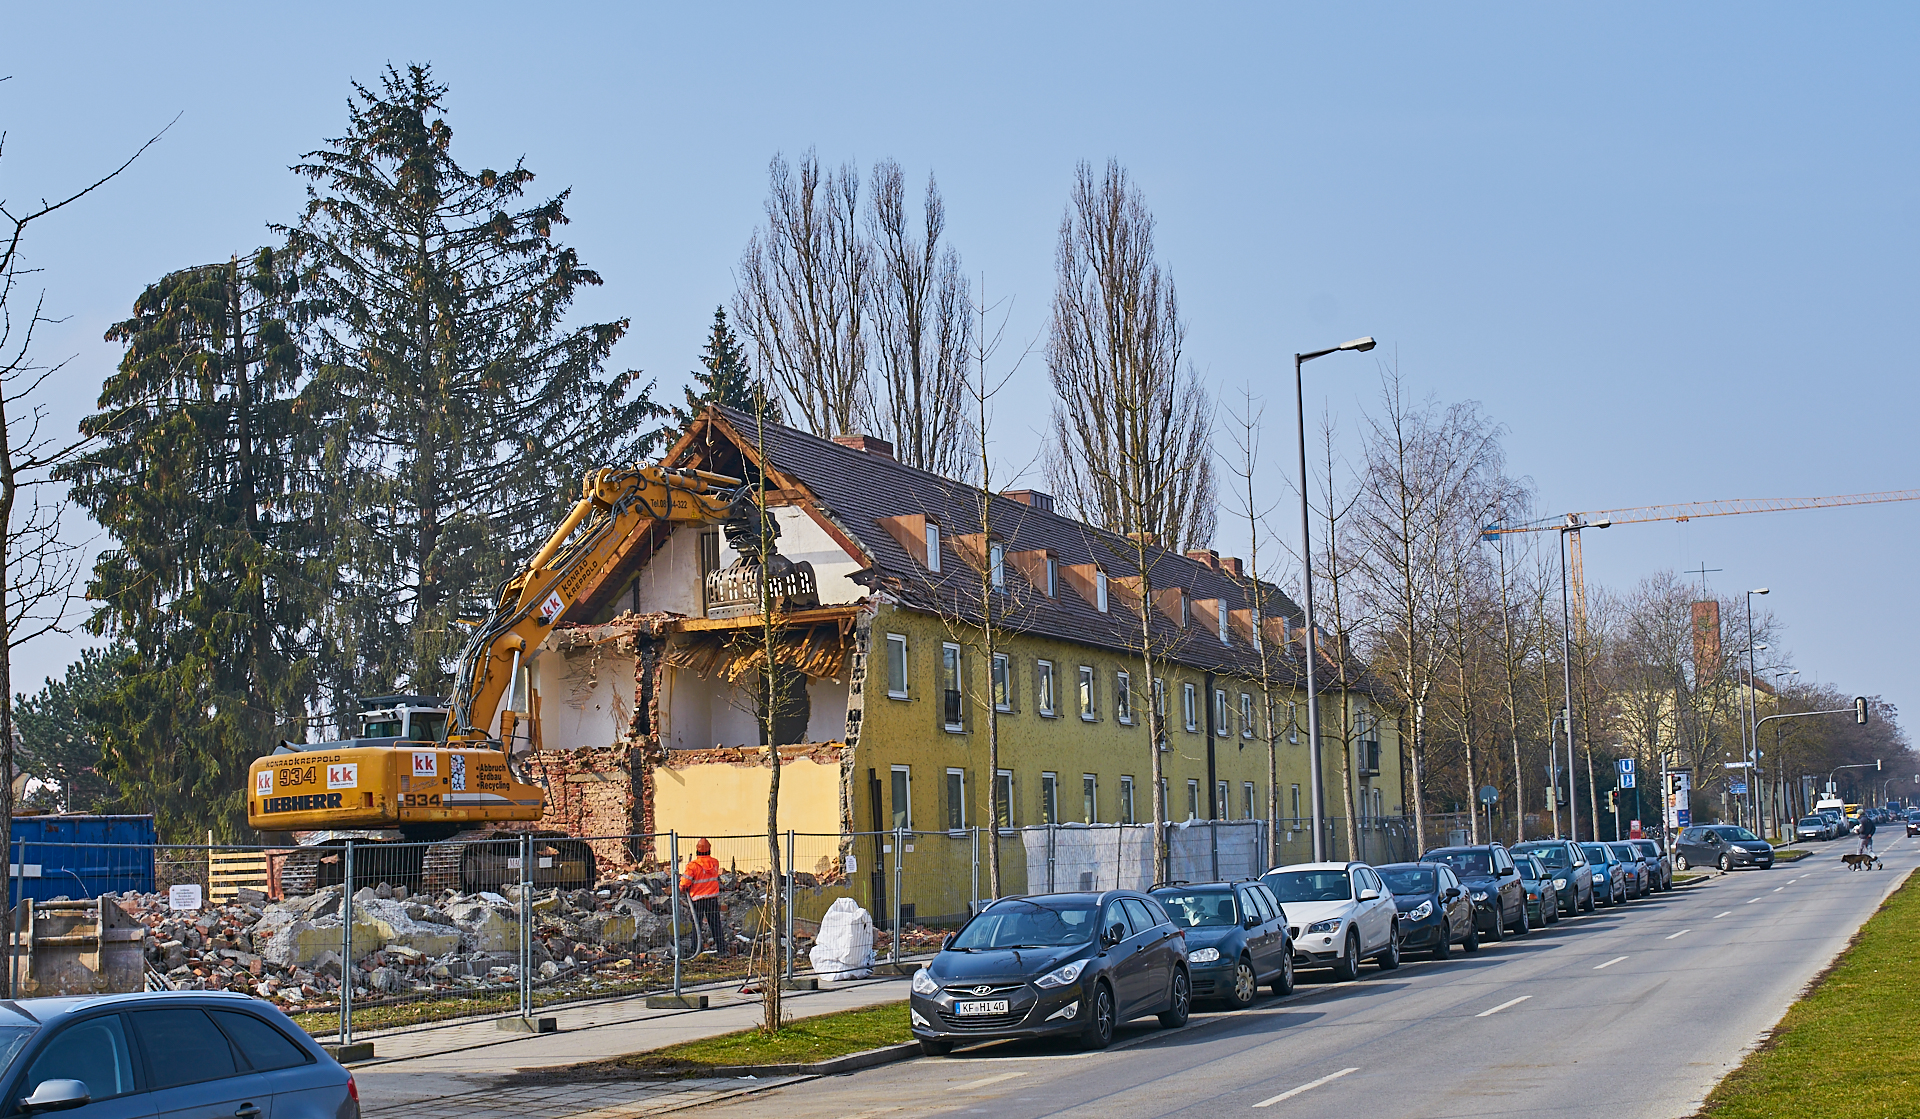 Neuperlach-maikaefersiedlung am 11.03.2016